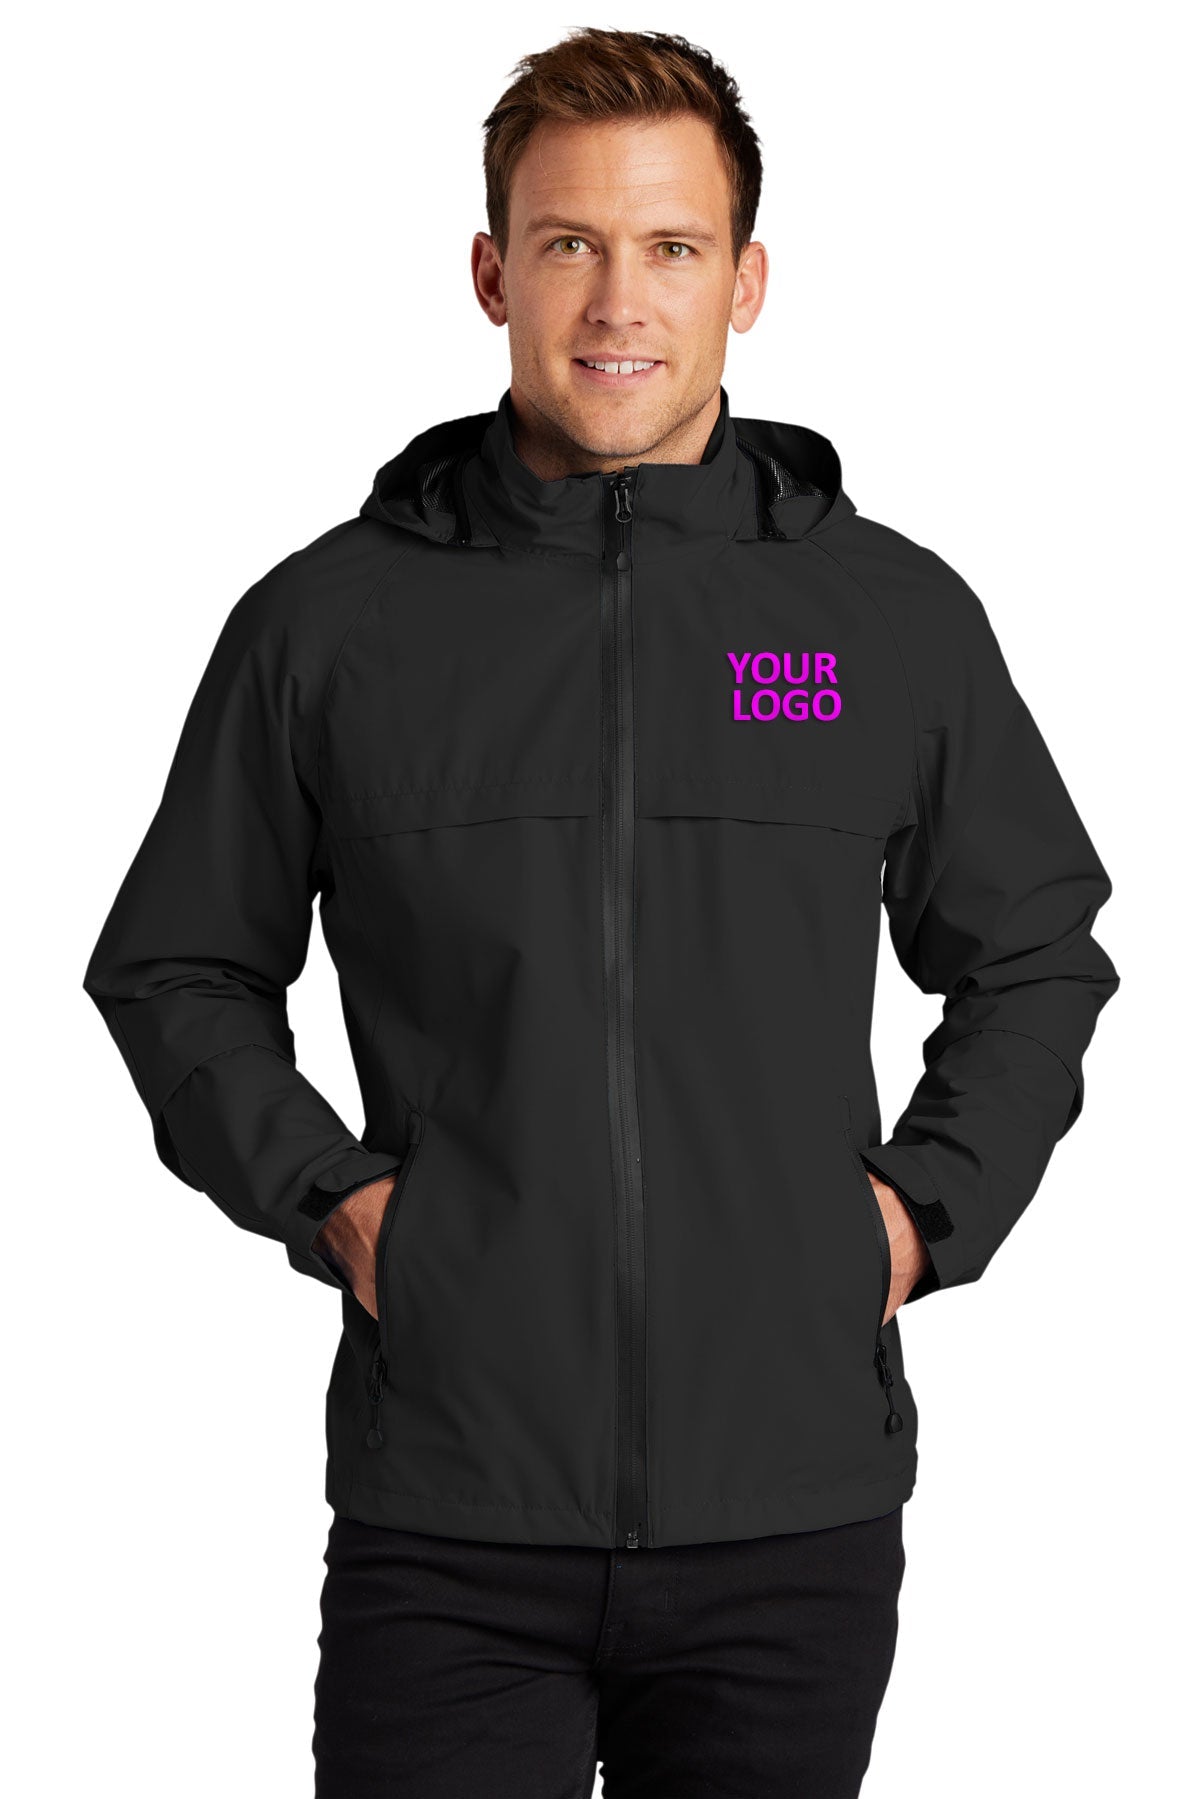 Port Authority Black J333 company logo jackets